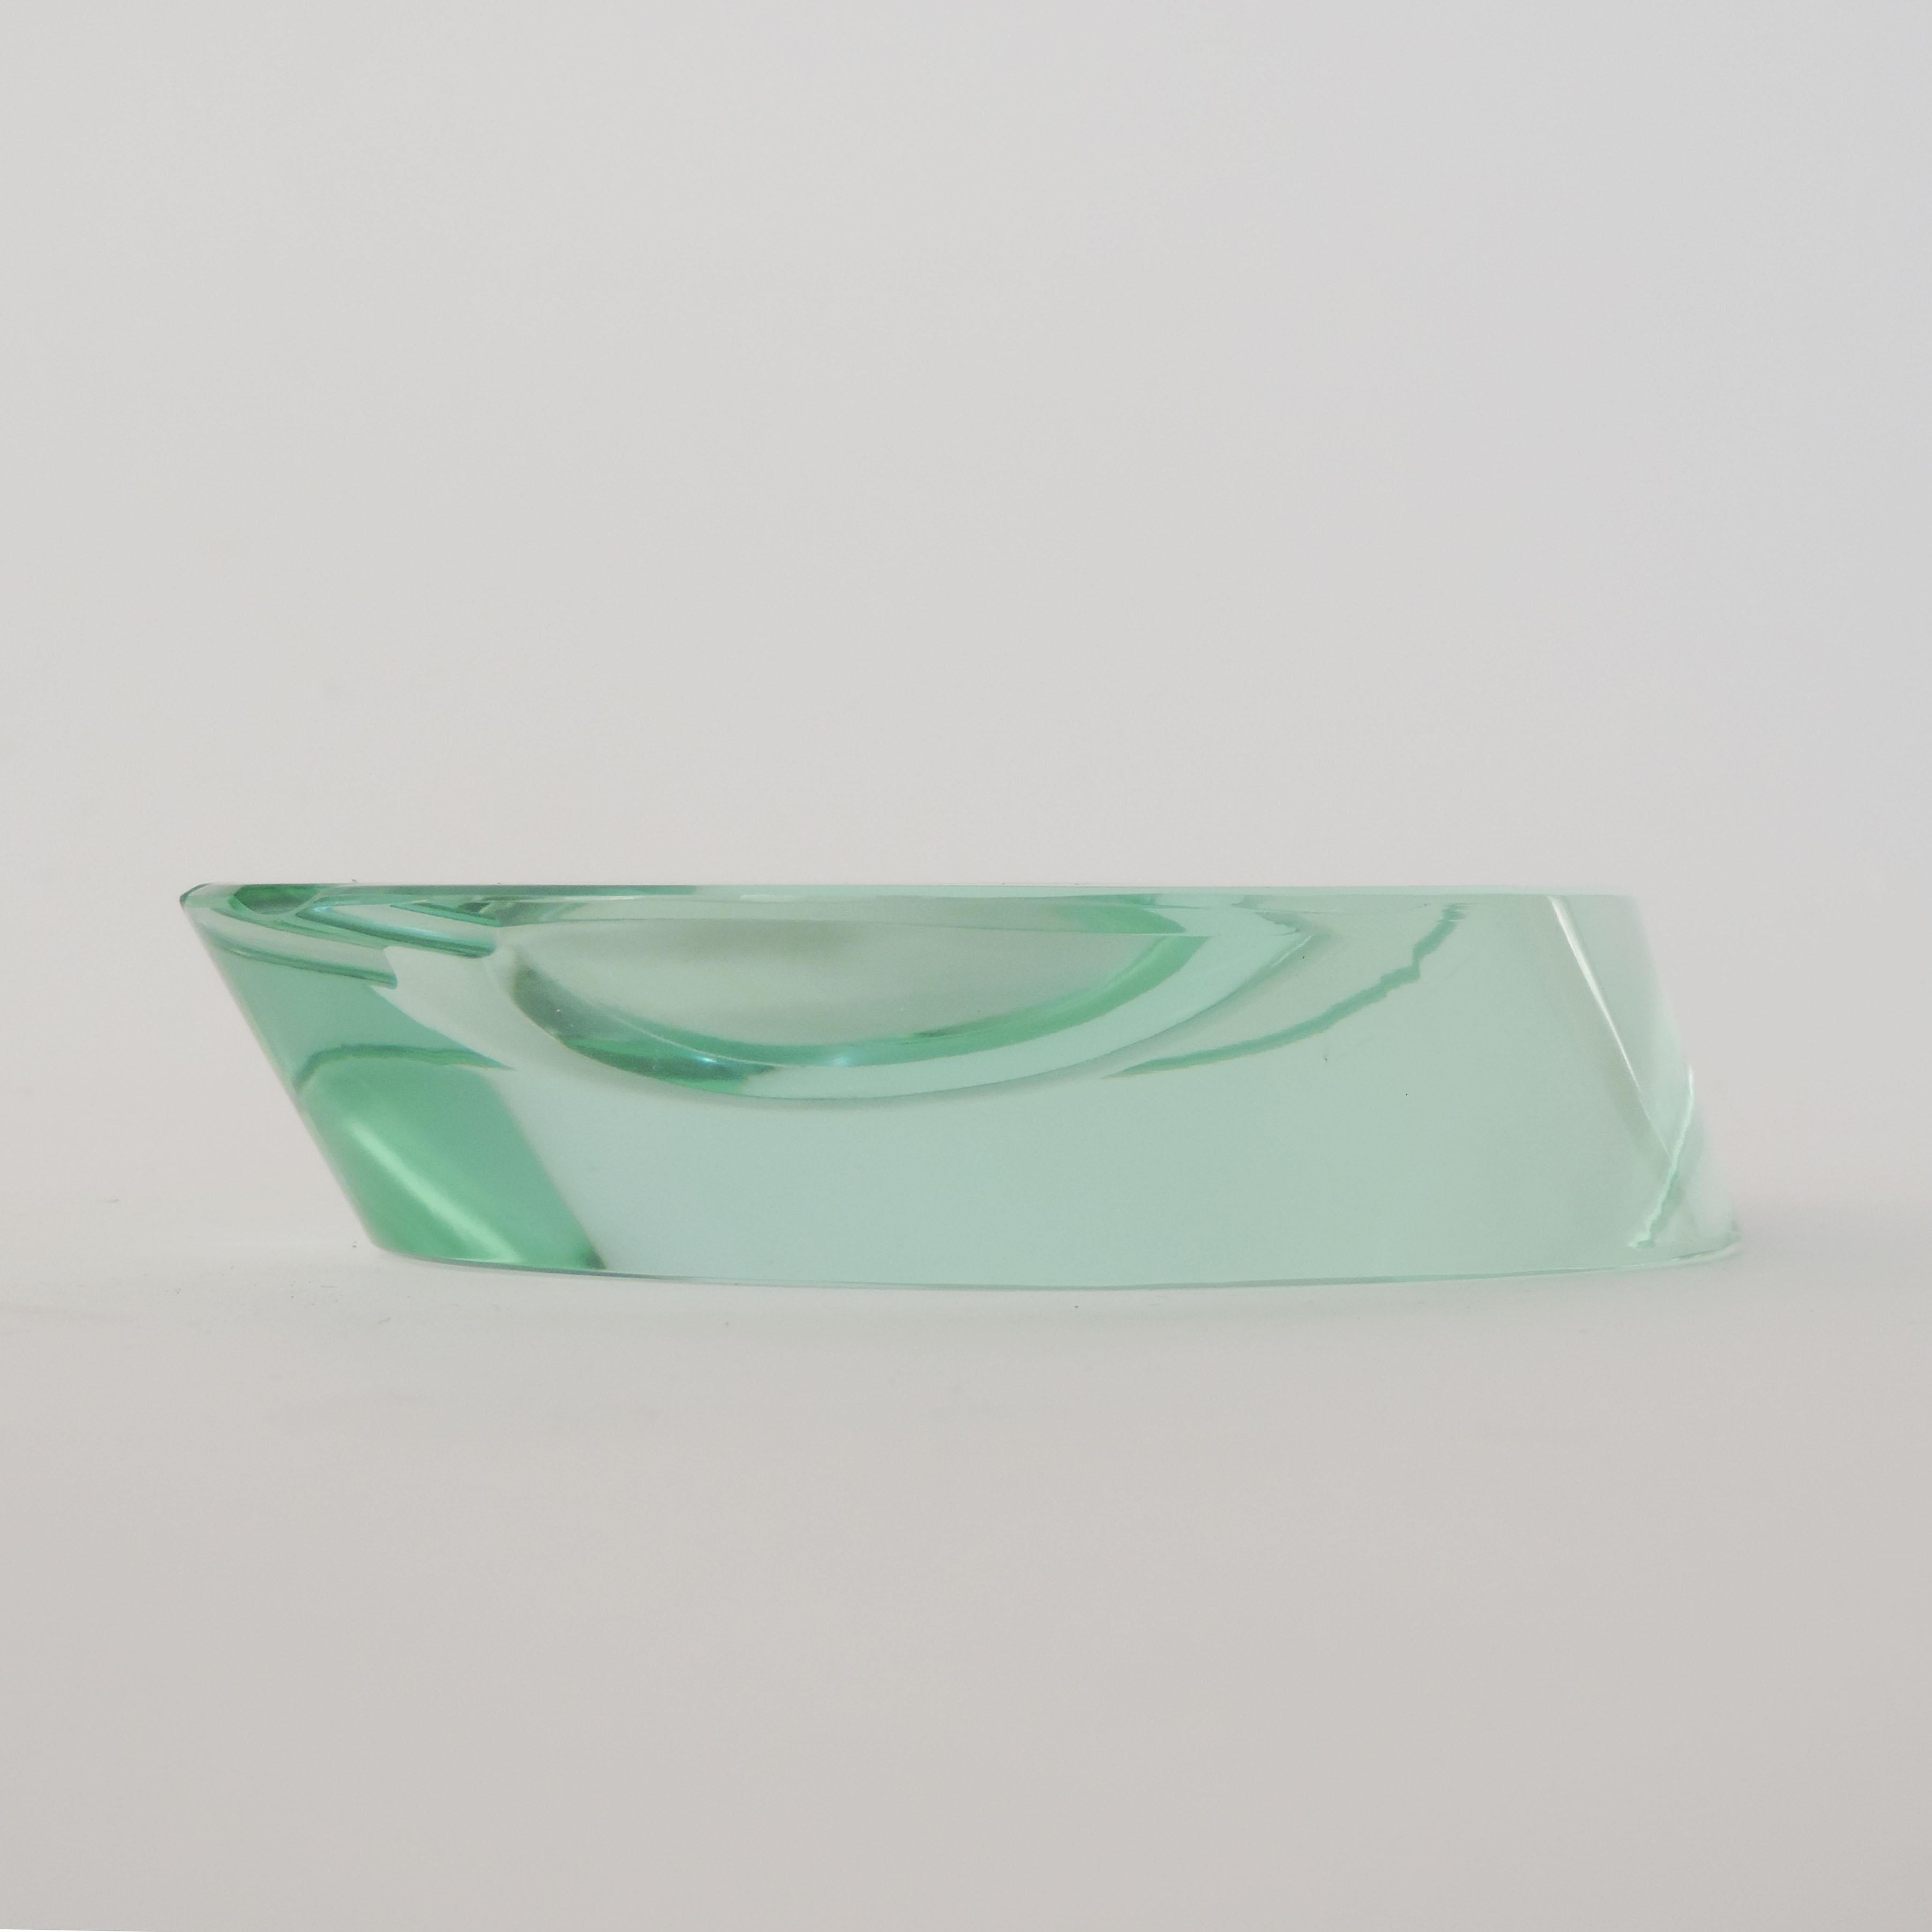 Italian Fontana Arte 1940s Glass Ashtray For Sale